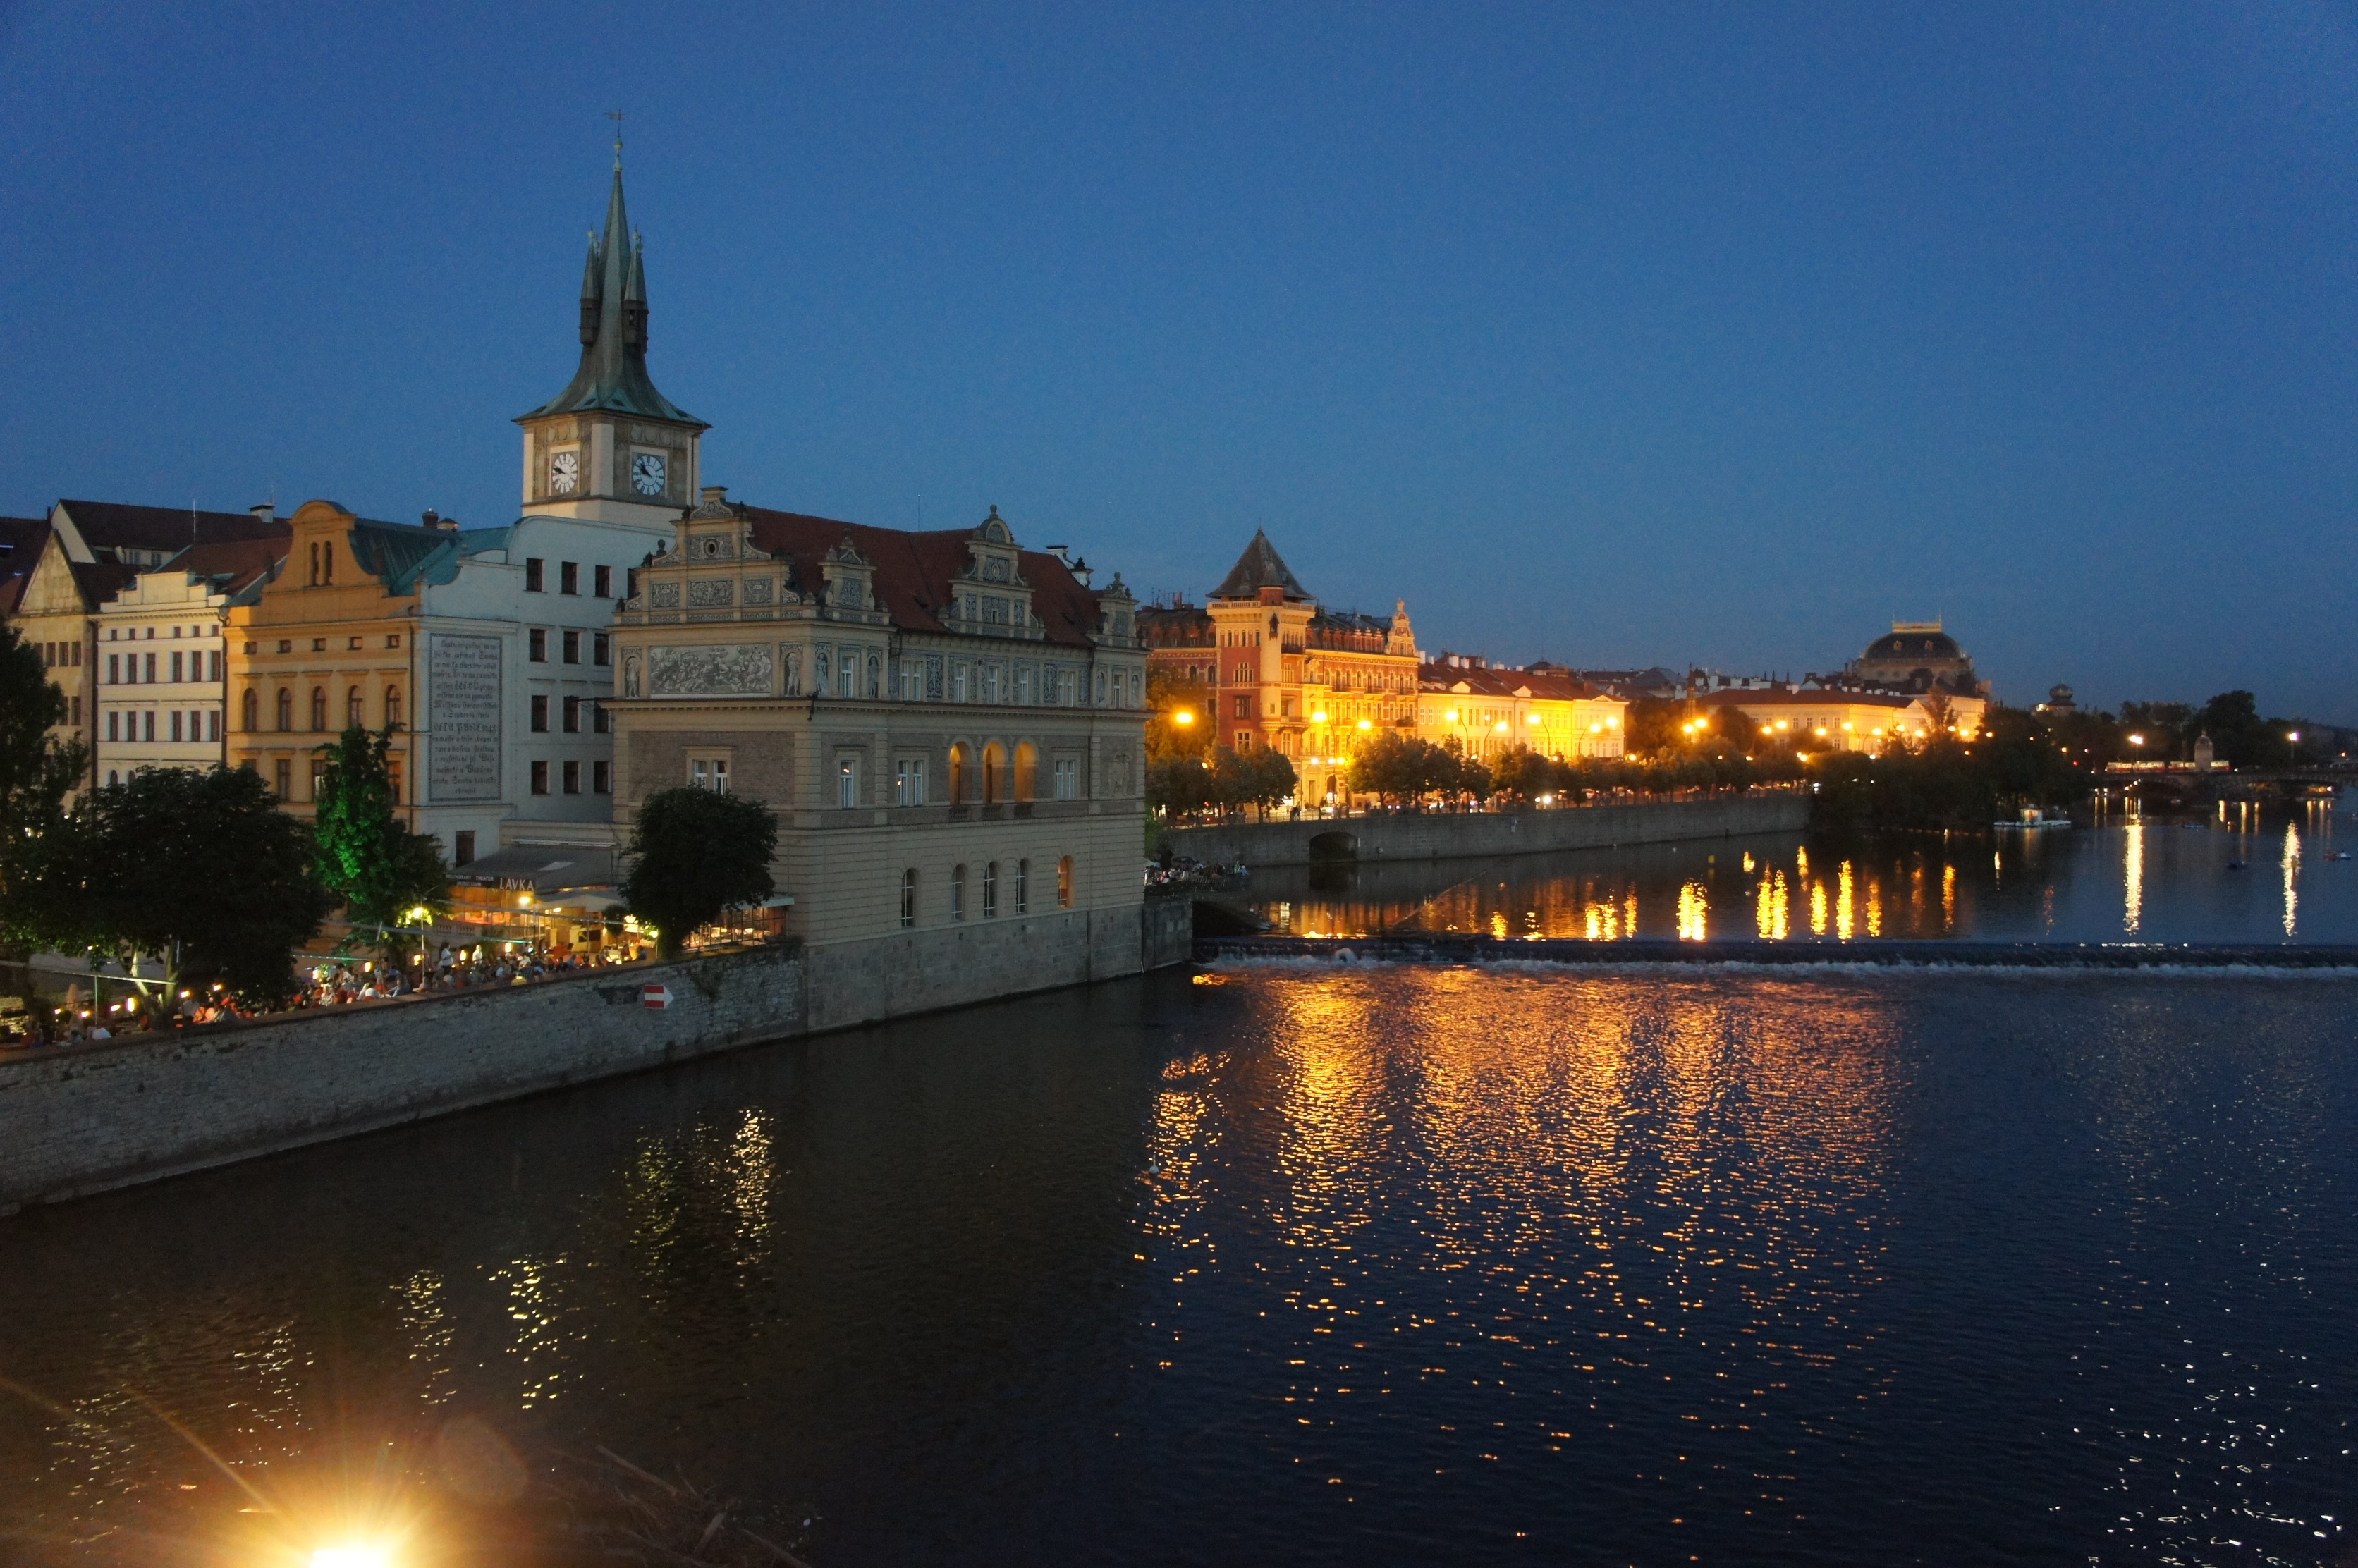 布拉格城堡夜景图片